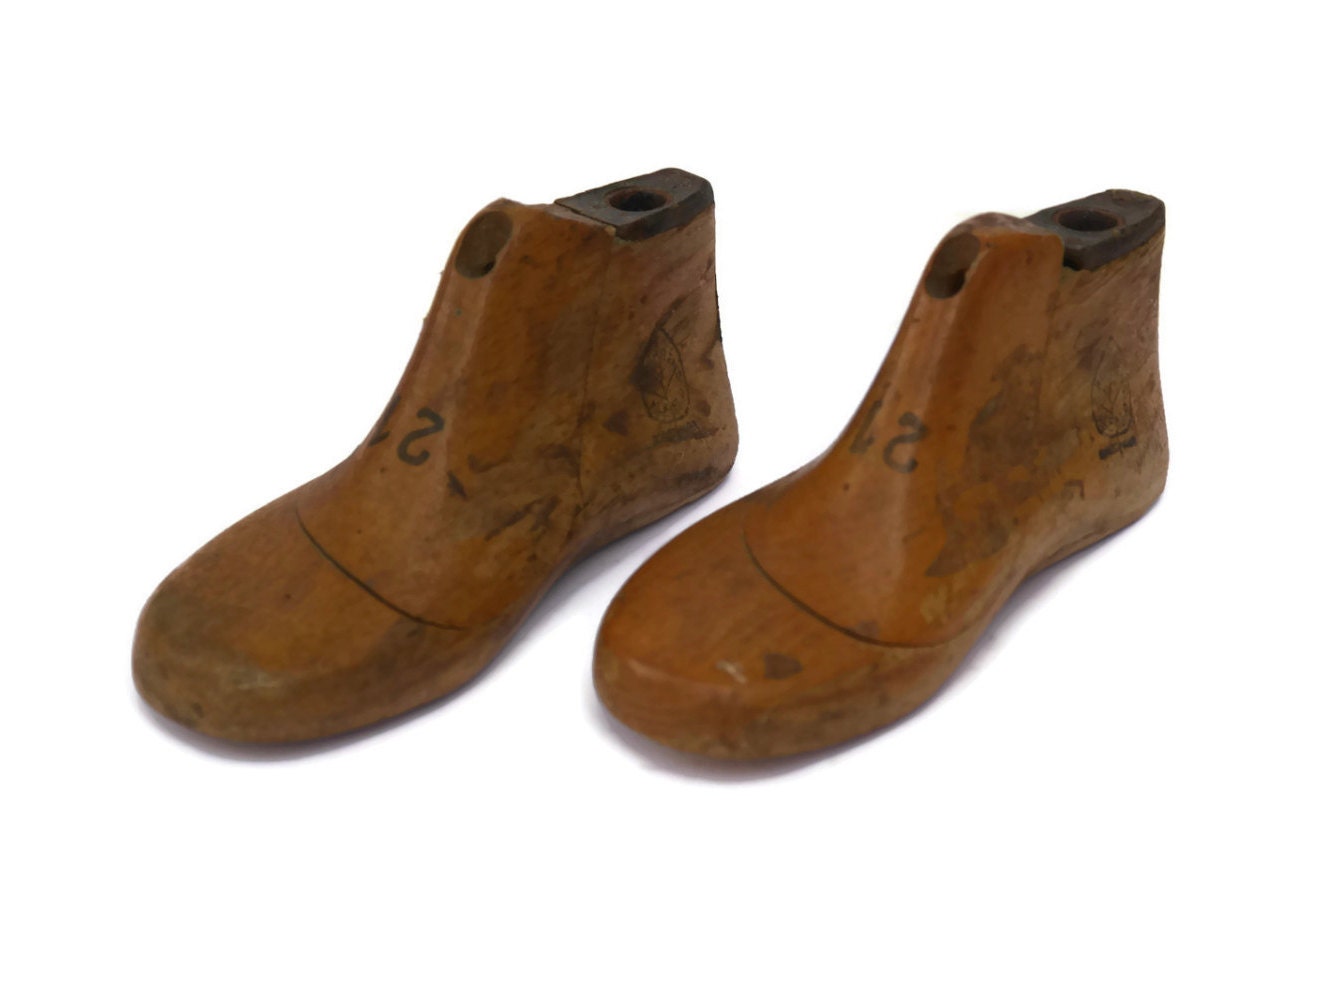 Antique Childrens Shoe Forms Wooden Shoe Lasts Wood Shoe